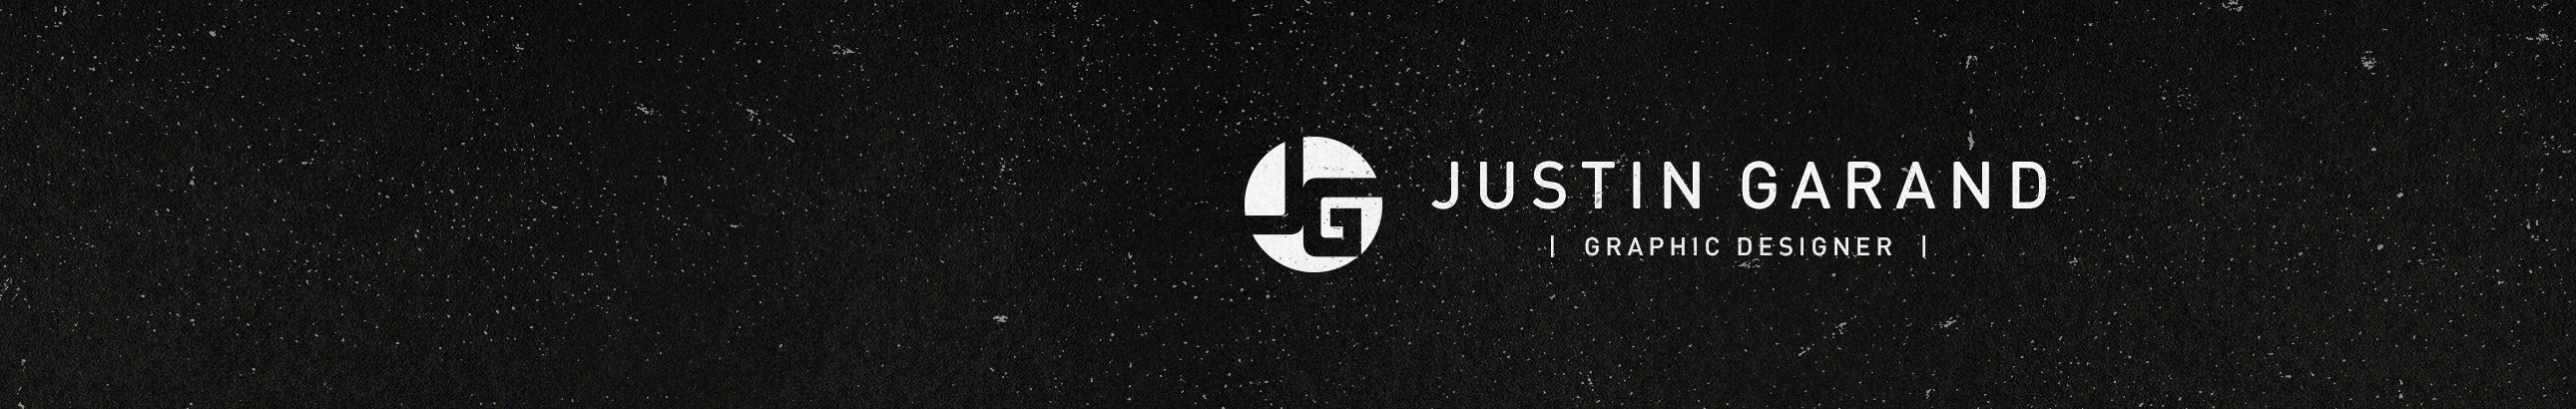 Banner de perfil de Justin Garand